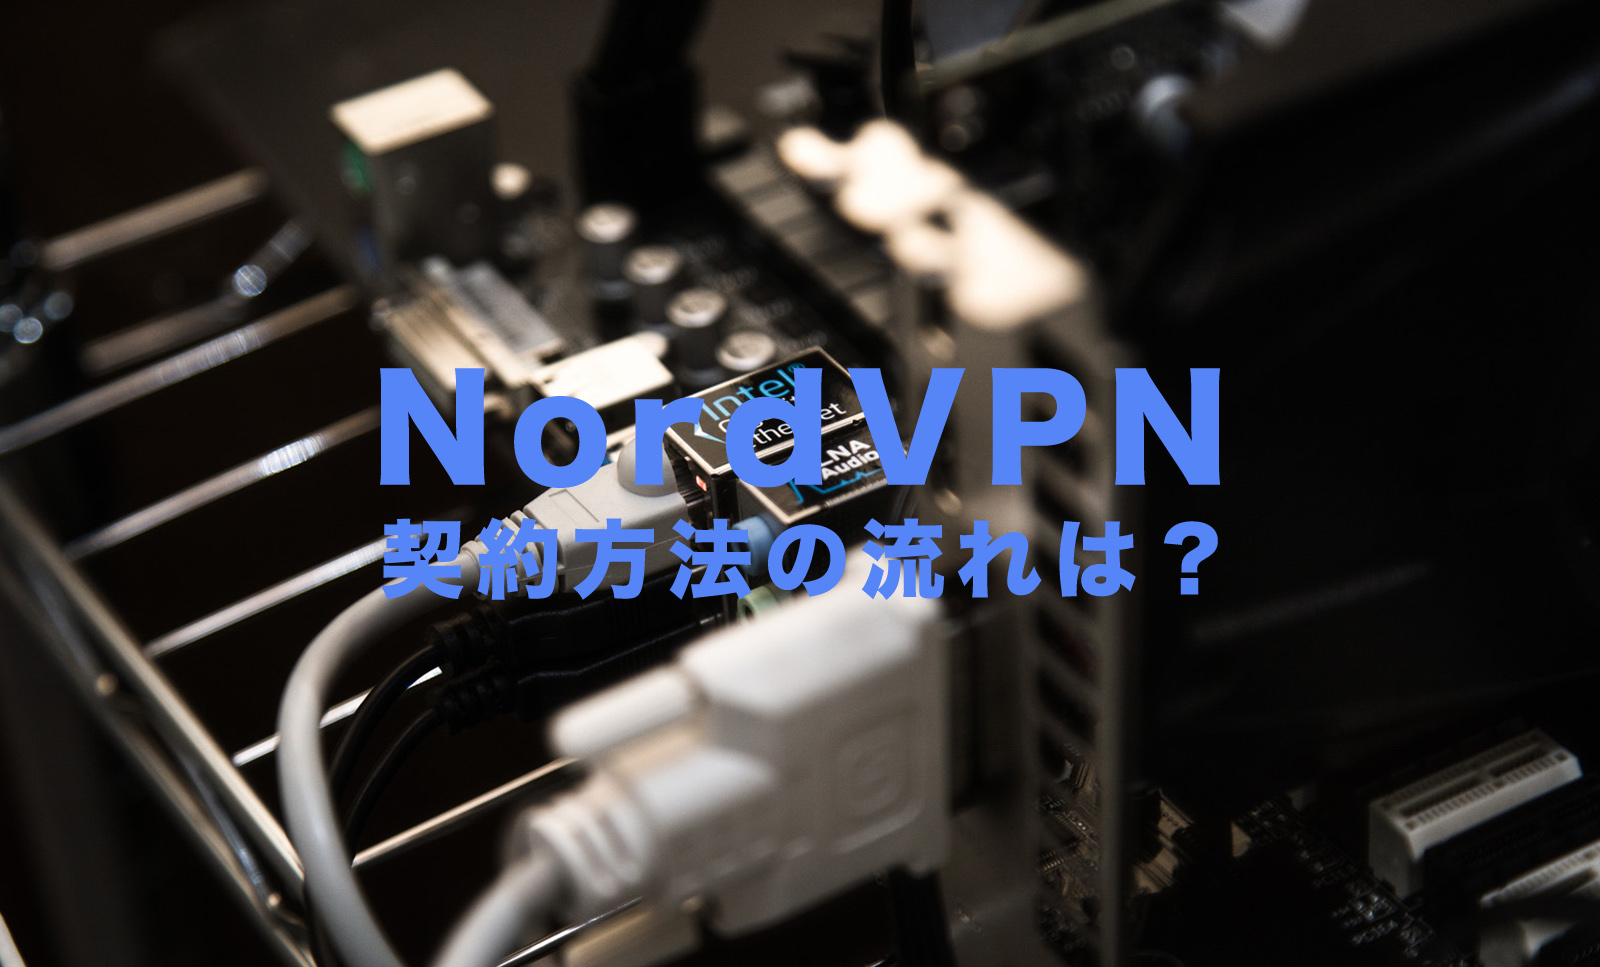 NordVPN(ノードVPN)の契約方法&登録方法の流れを解説！のサムネイル画像